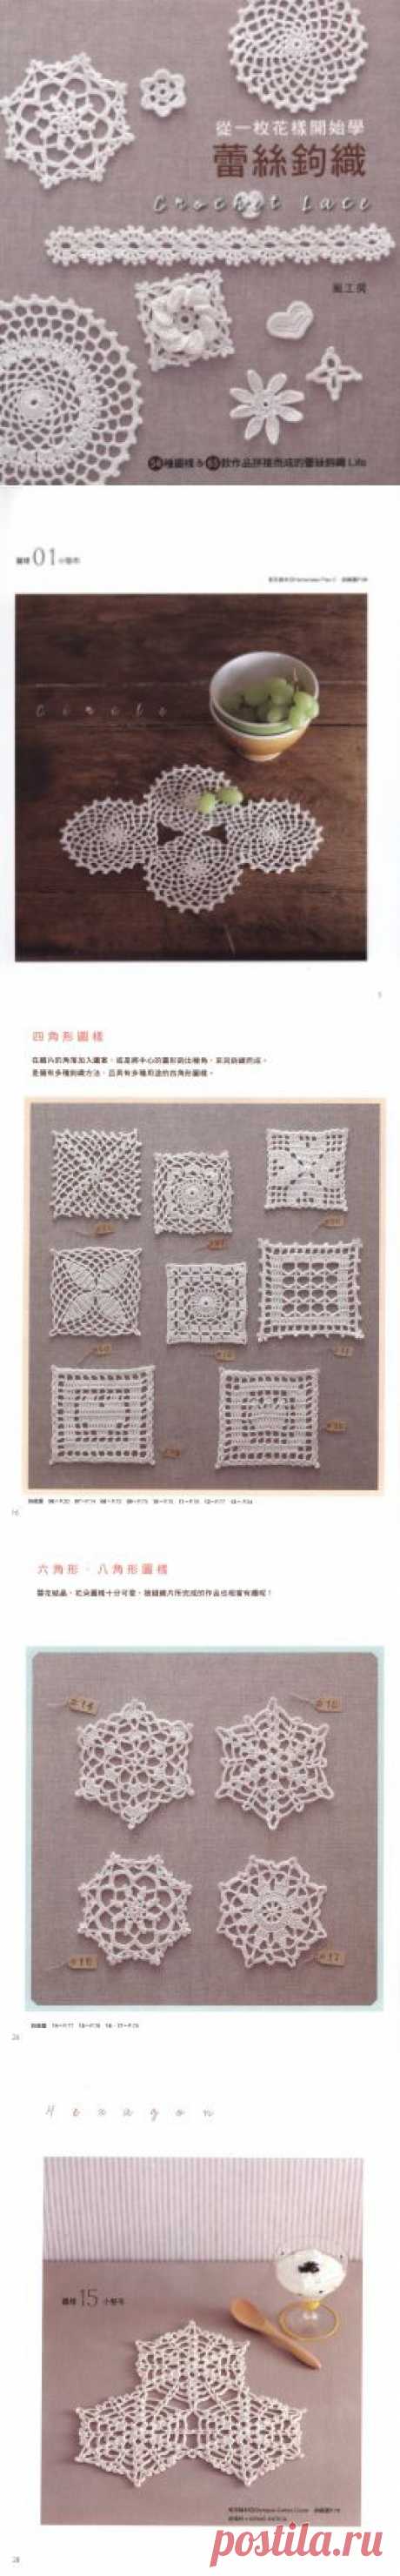 Crochet Lace Floral Applique 2011